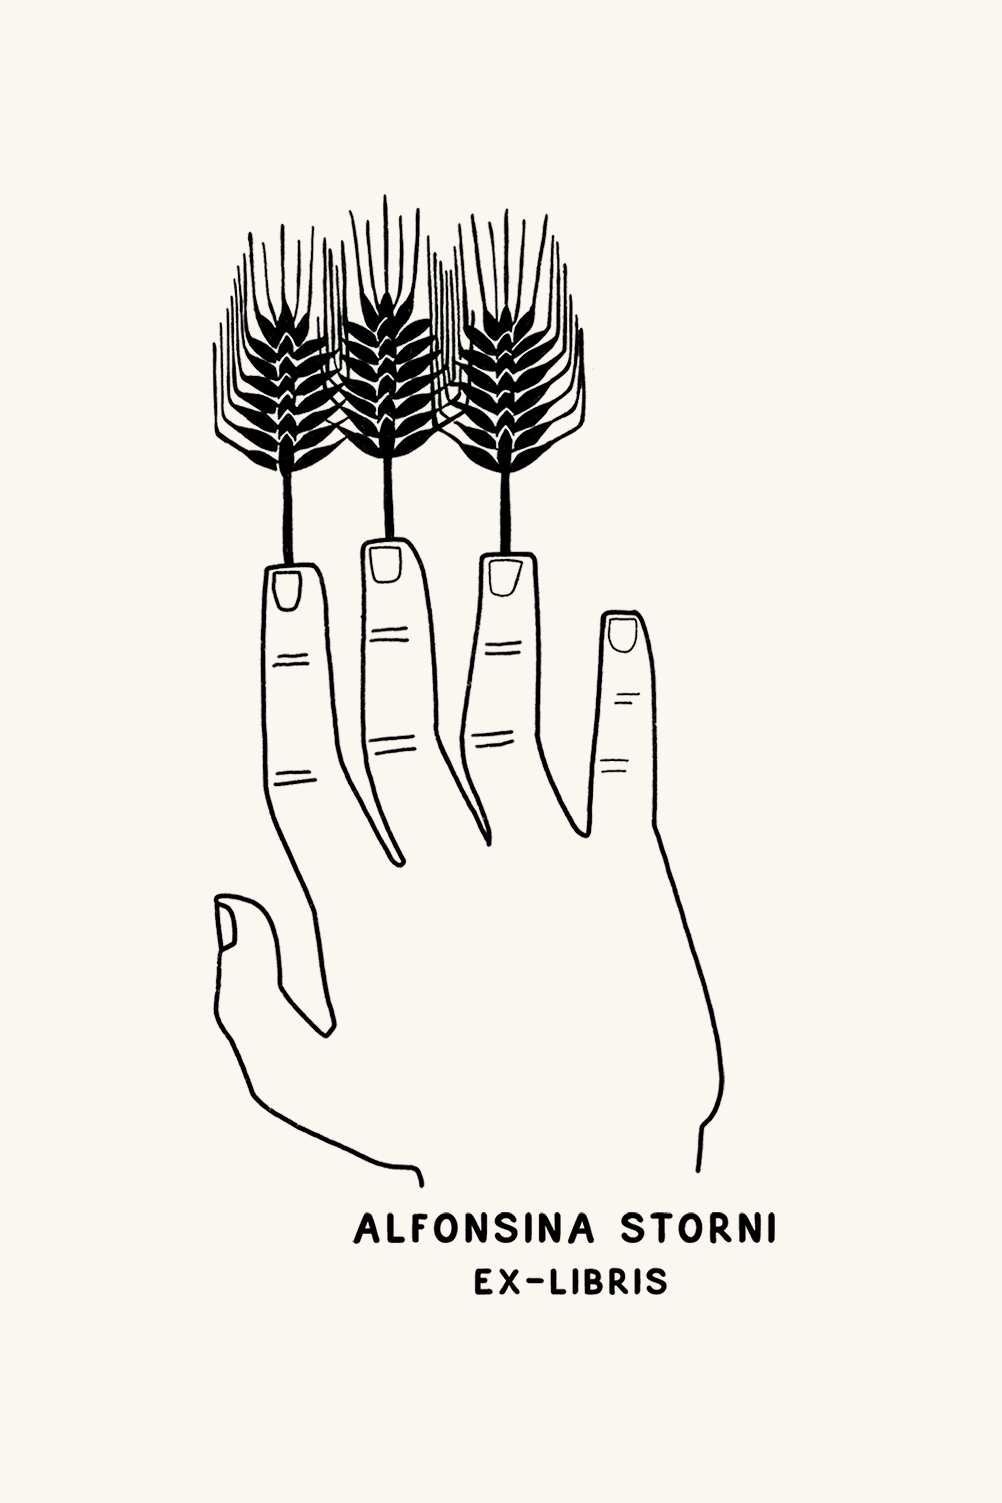 Ilustración en blanco y negro de una mano con tallos de trigo a modo de dedos, con la etiqueta "Les Tampons de Roser Ex-libris Dedos de trigo".